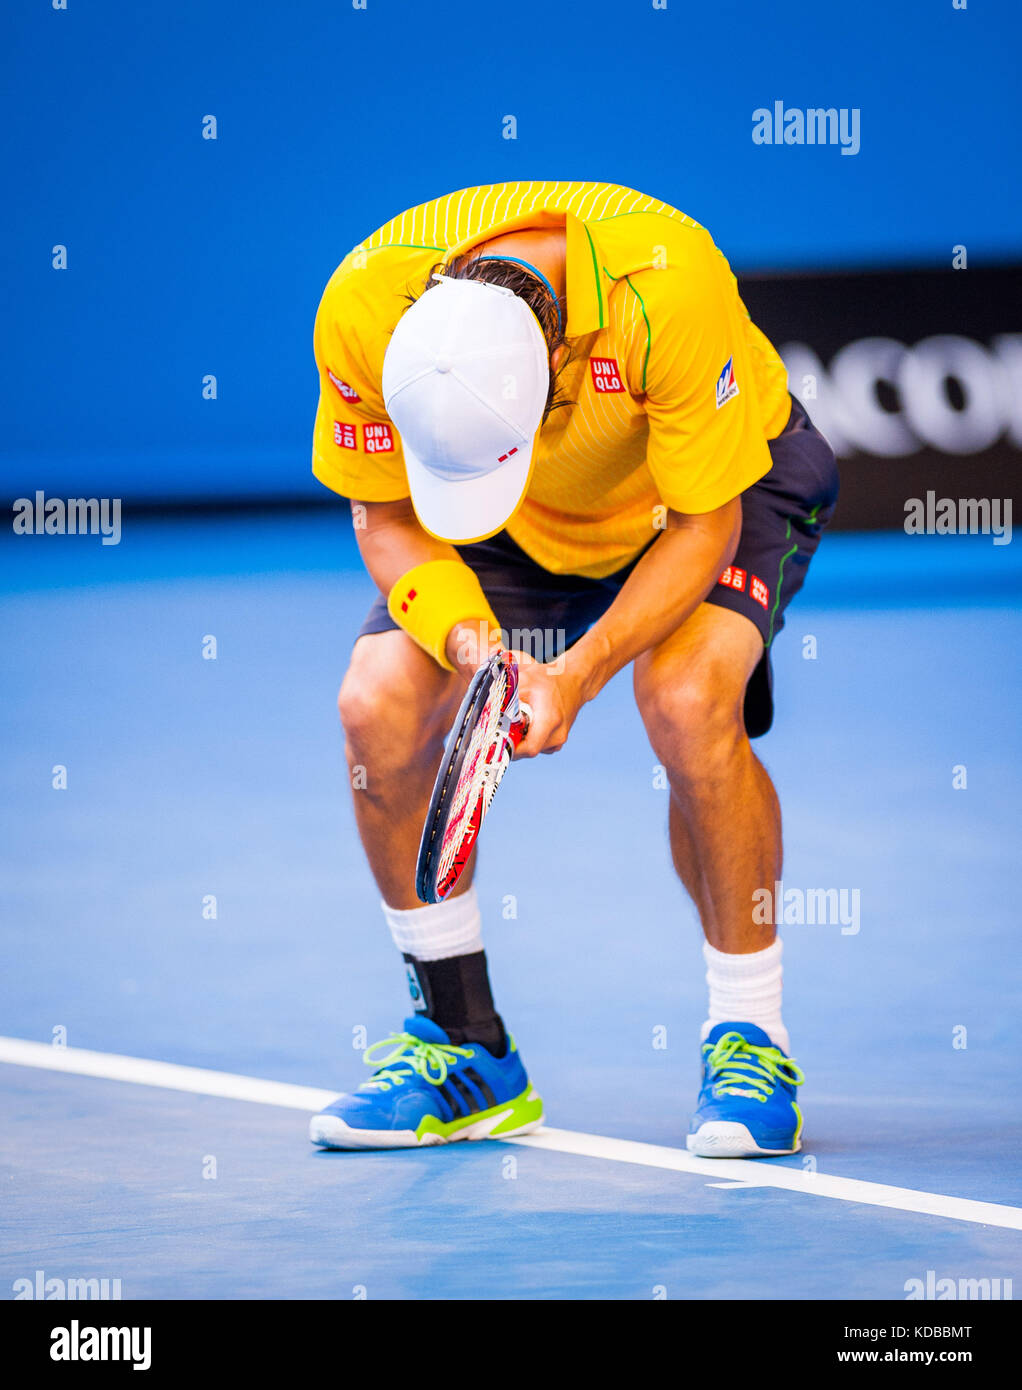 Kei Nishikori (JPN) stellte am achten Tag der Australian Open eine starke Herausforderung für R. Nadal (ESP), den ersten Platz in der Männereinzel-Division, vor Stockfoto